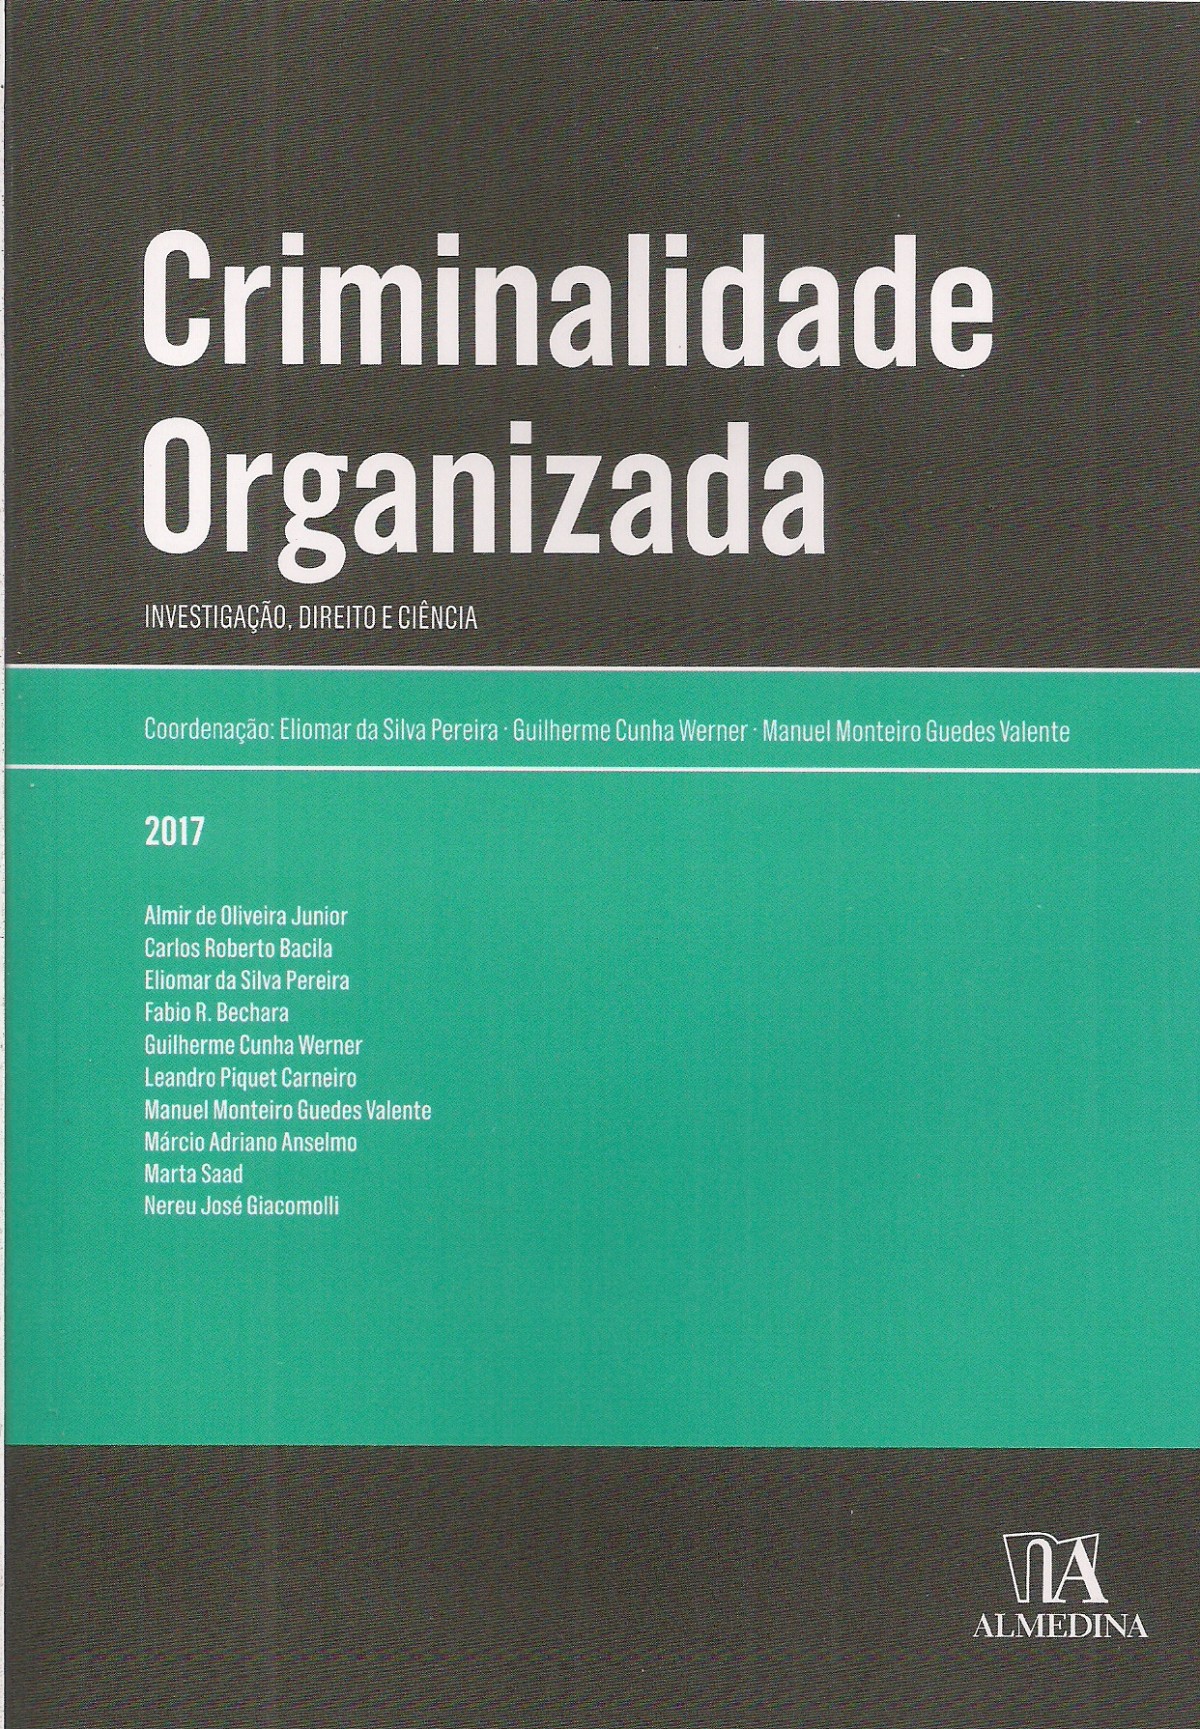 Foto 1 - Criminalidade Organizada - Investigação, direito e ciência